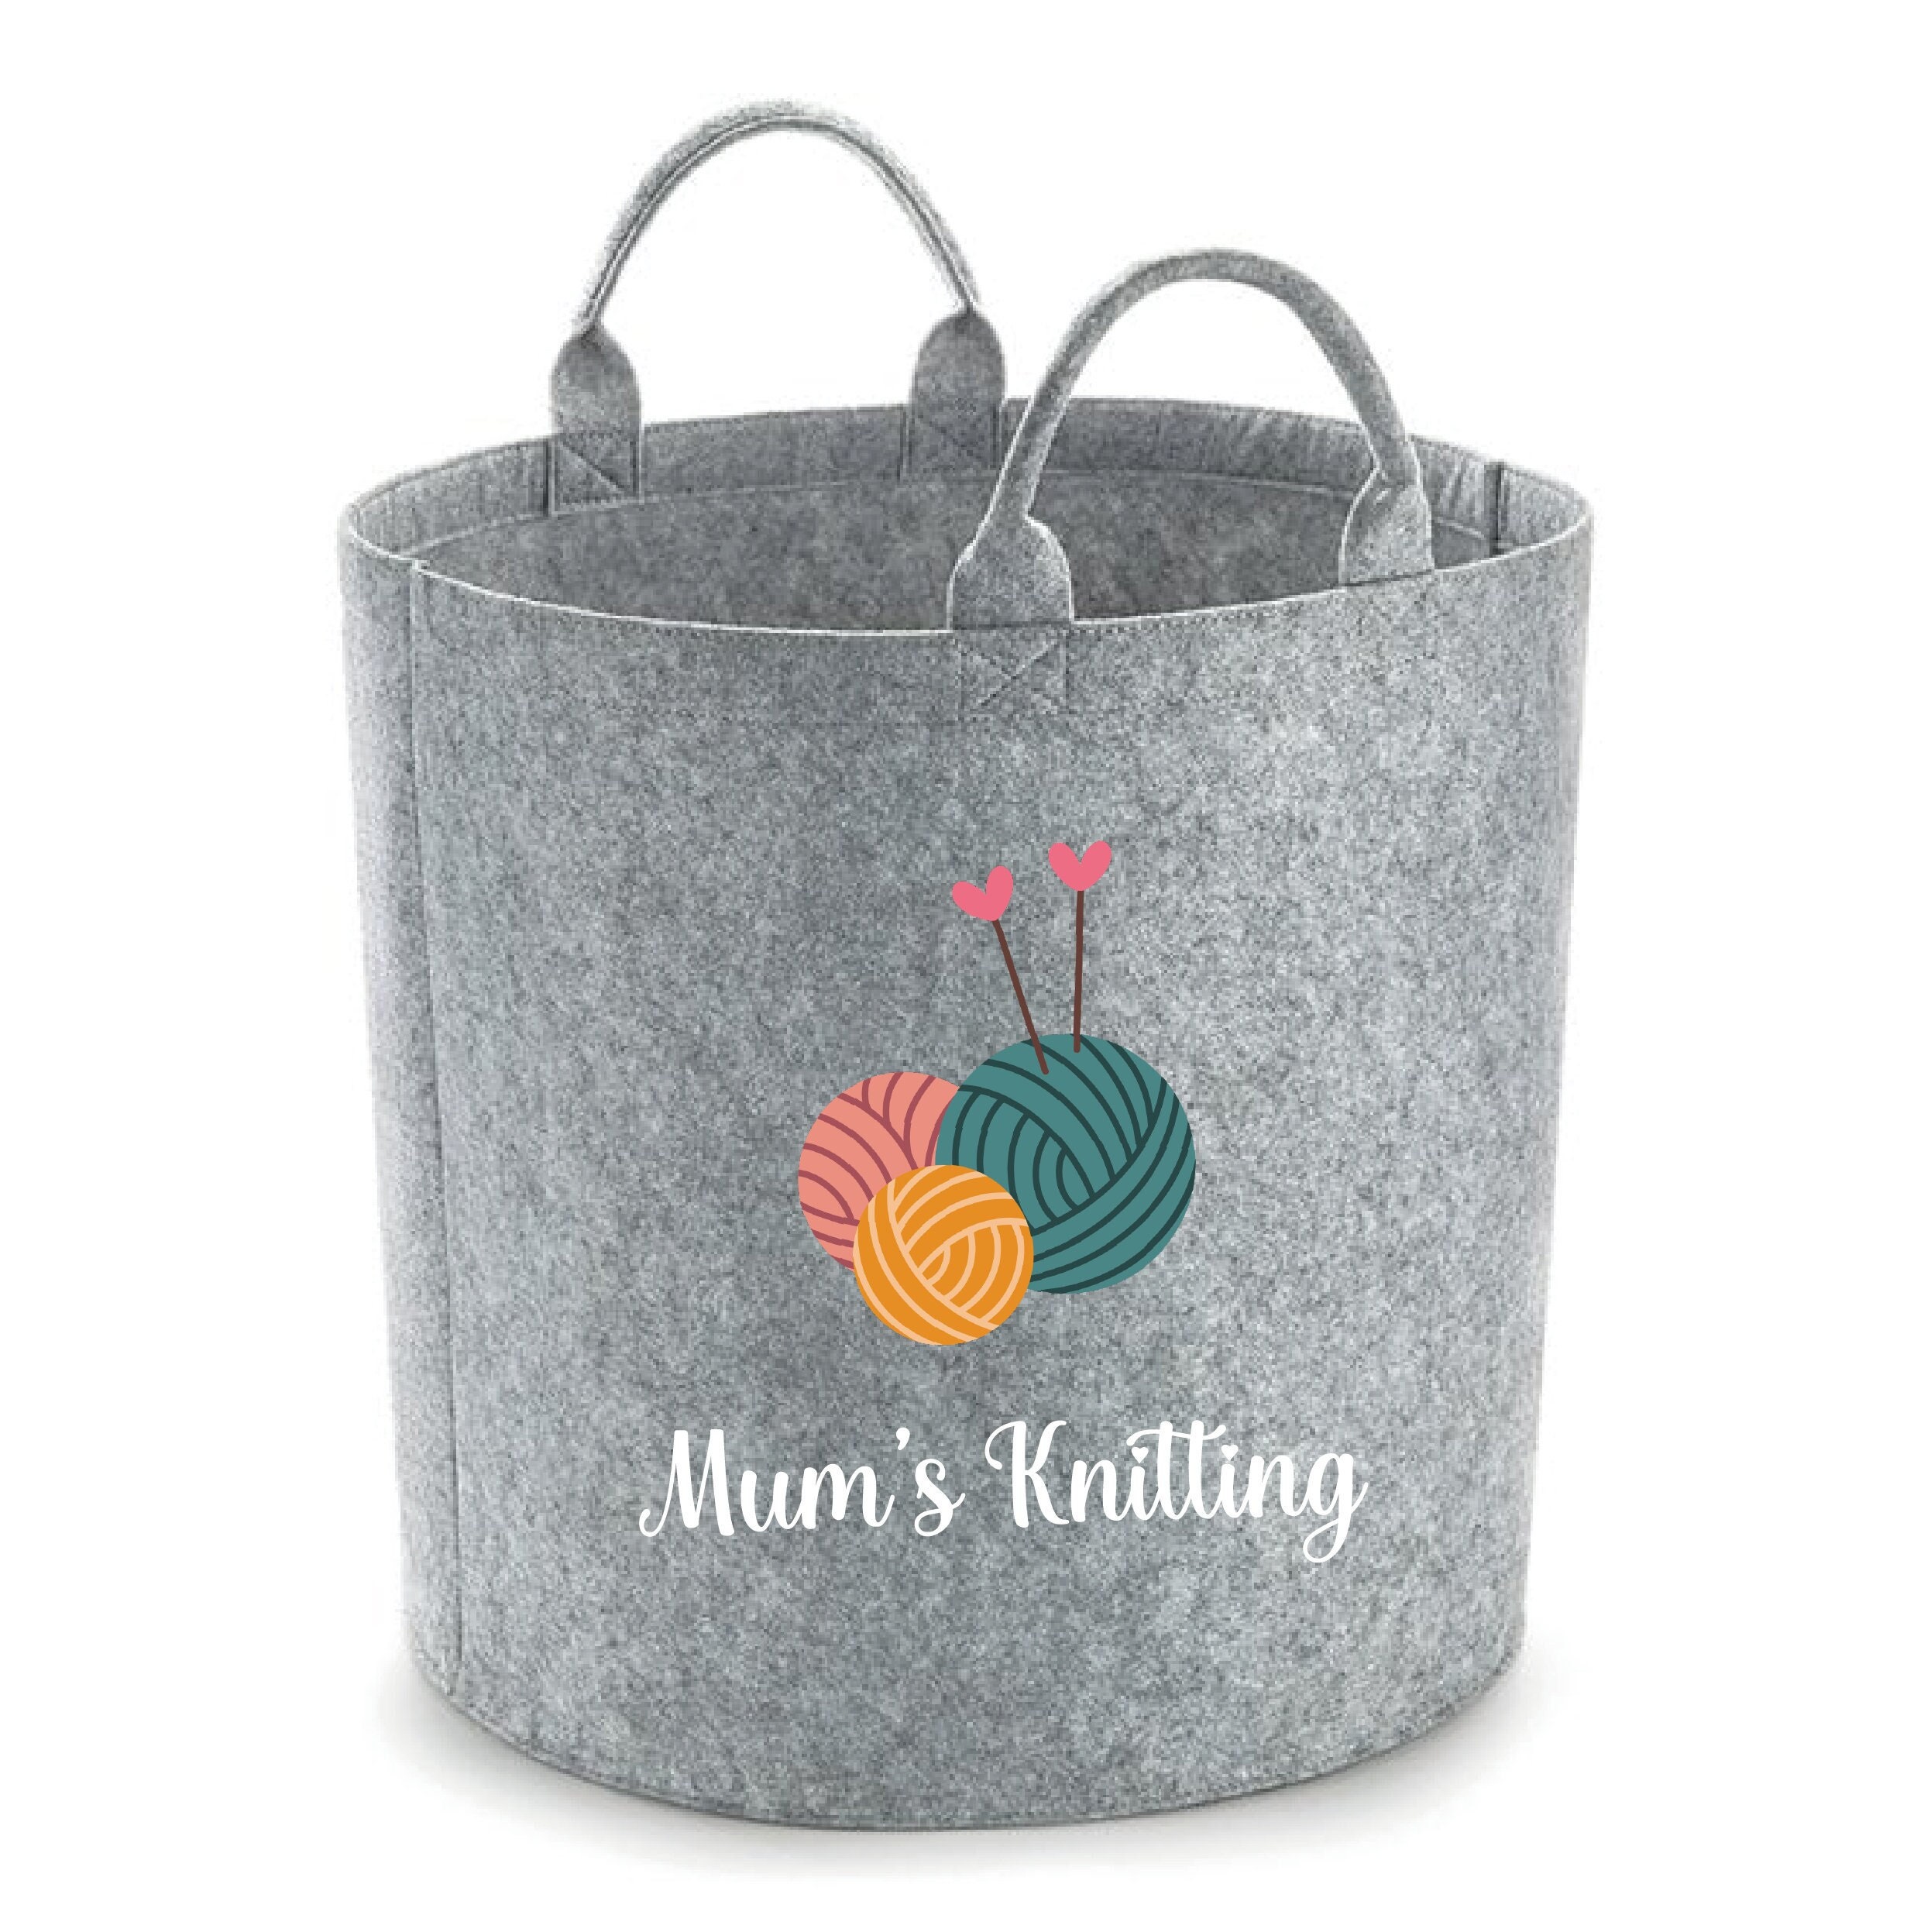 Personalised Knitting Storage Basket 